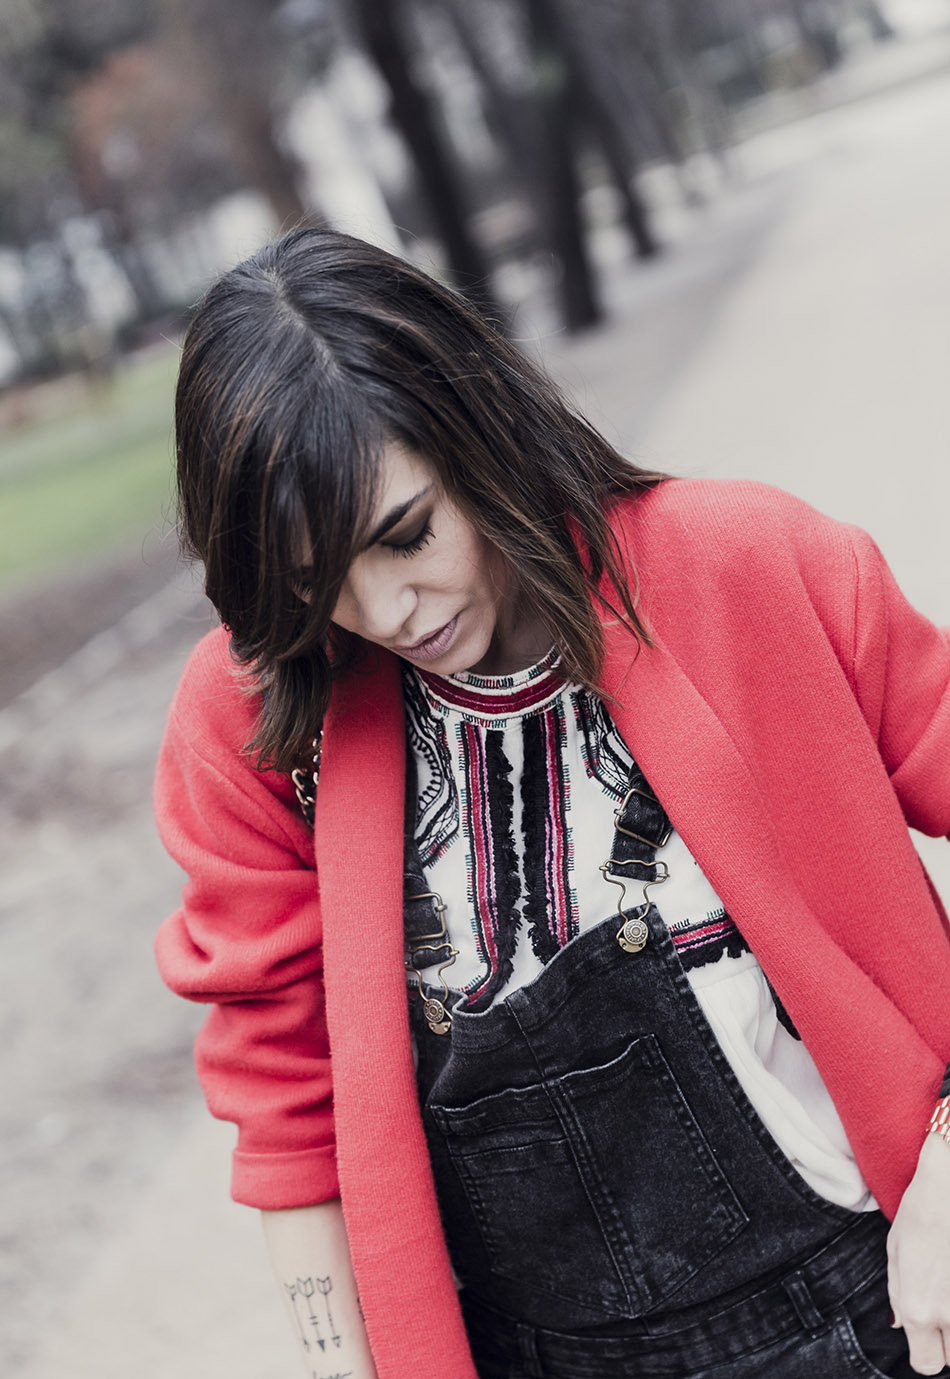 look de street style con abrigo rojo, peto vaquero negro, blusa bordada, botines con tachuelas y bolso purificación garcía